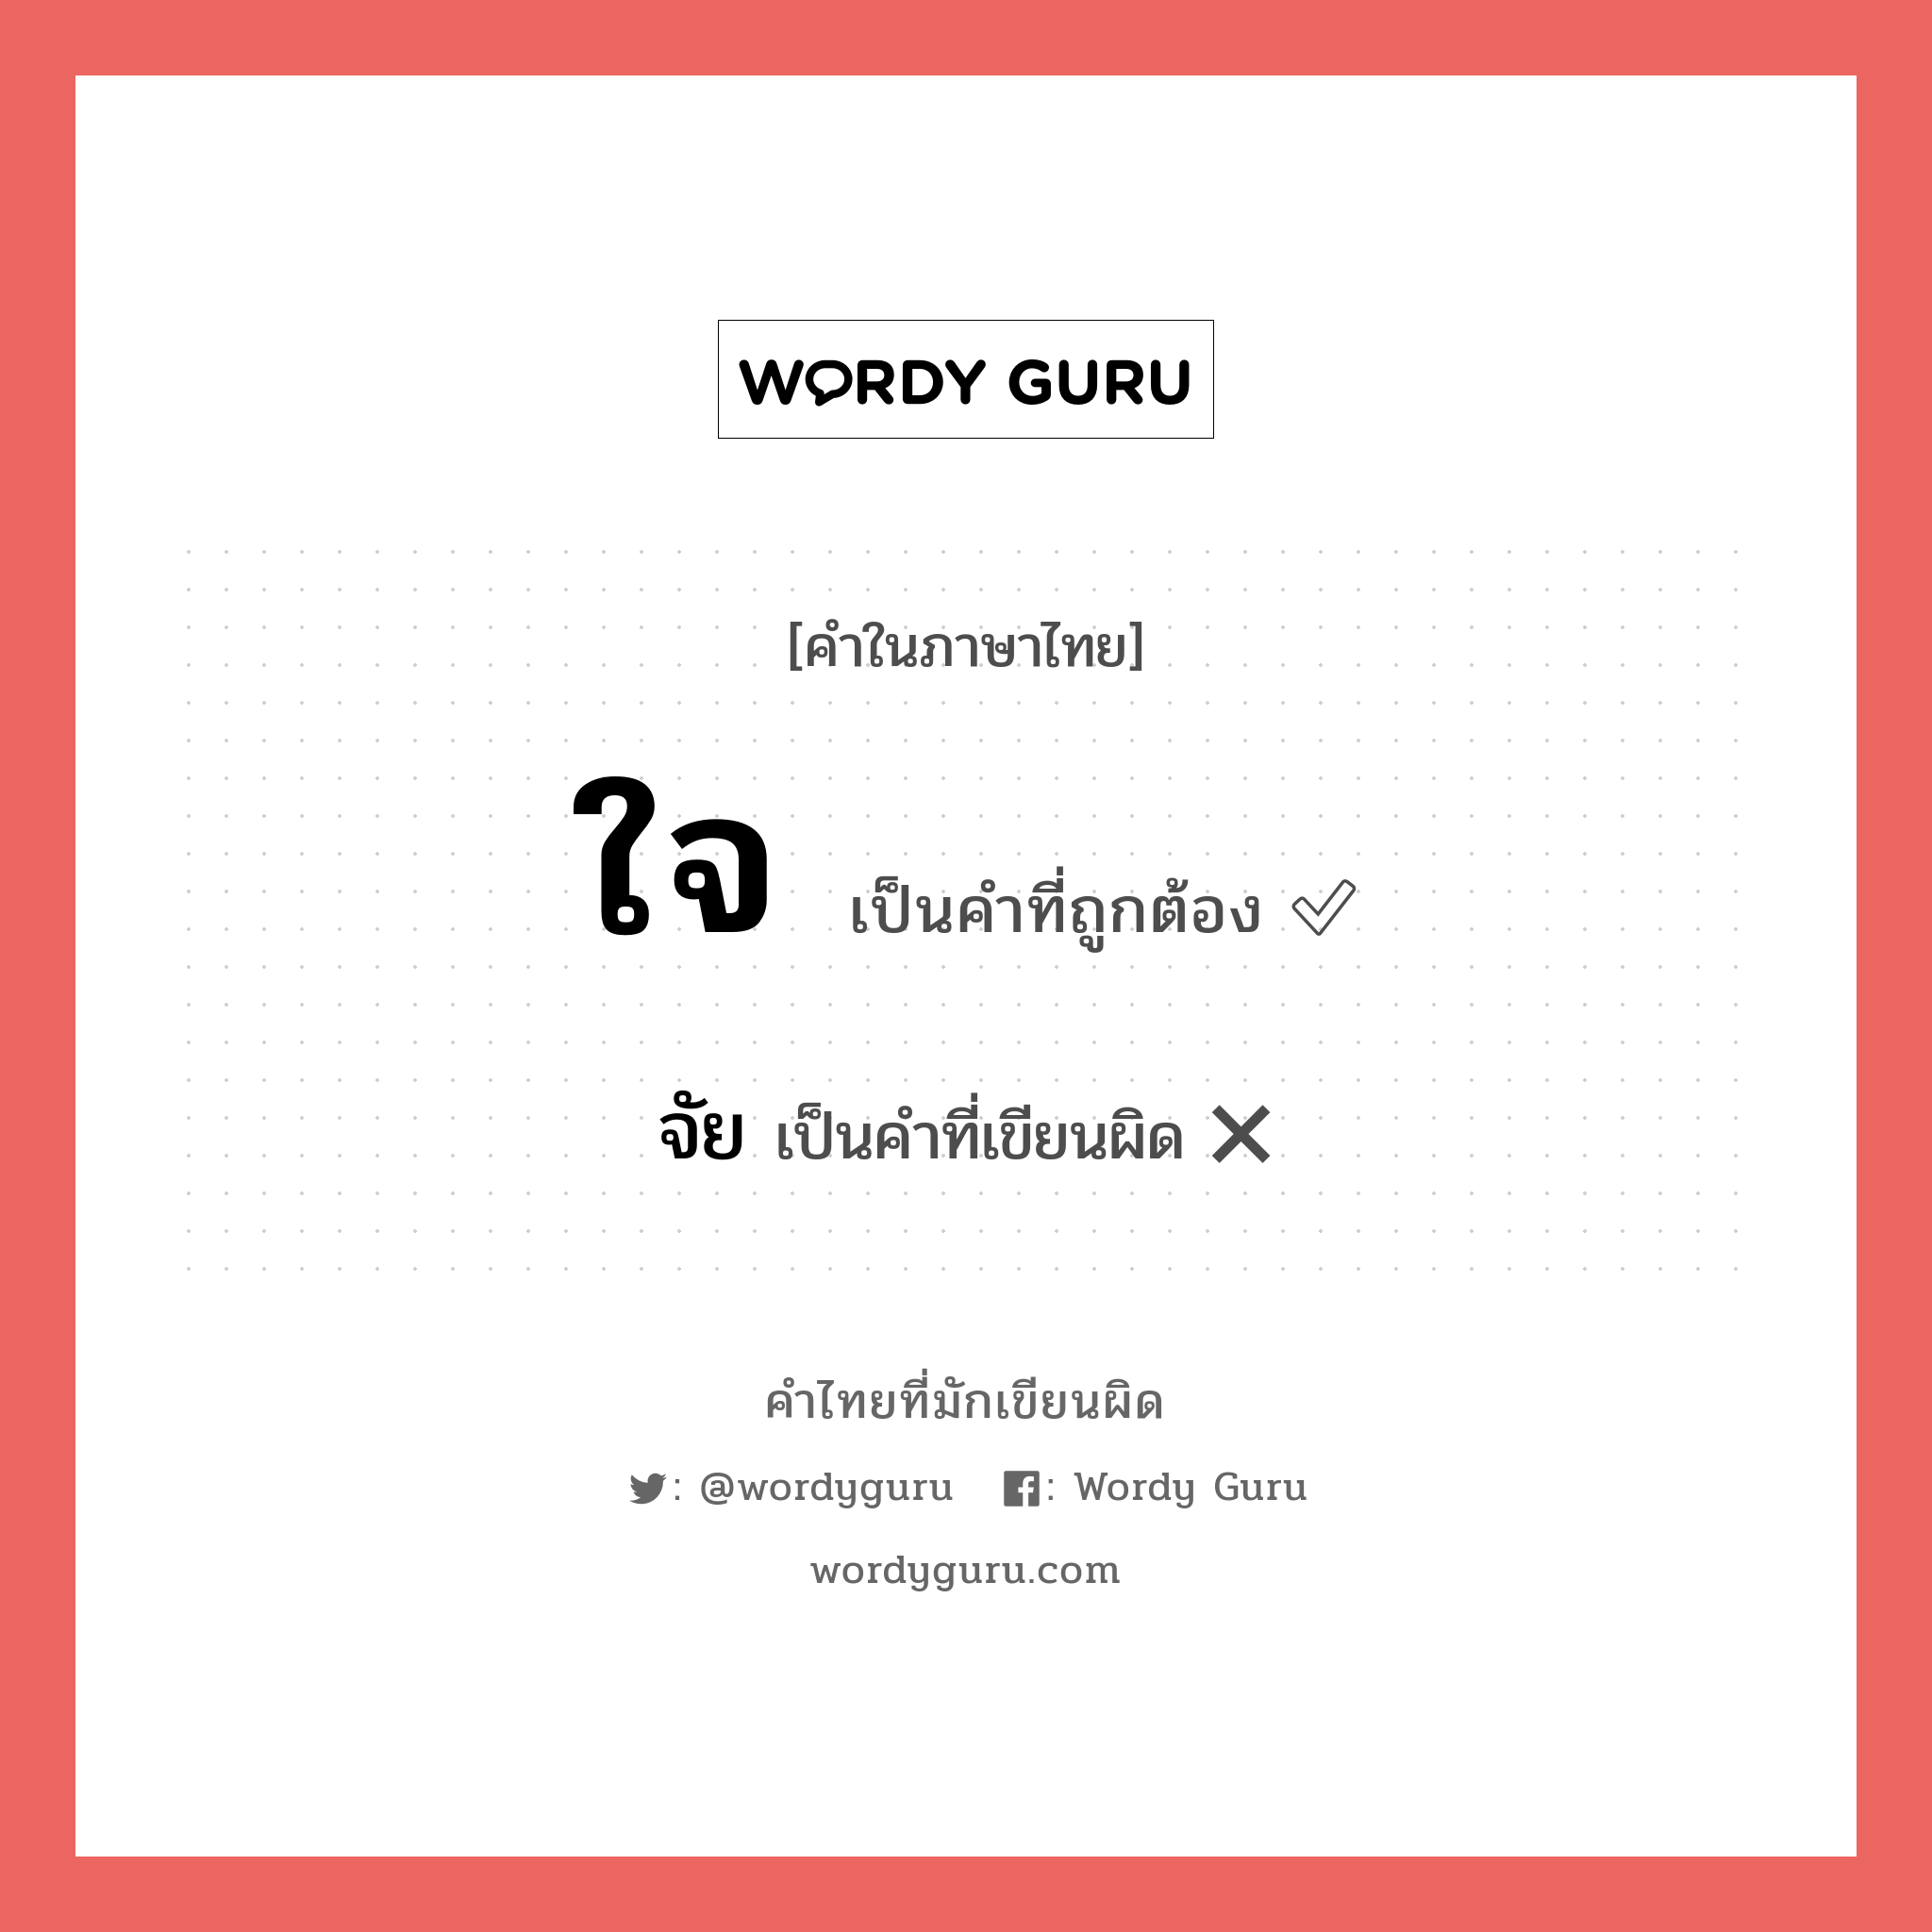 จัย หรือ ใจ คำไหนเขียนถูก?, คำในภาษาไทยที่มักเขียนผิด จัย คำที่ผิด ❌ ใจ